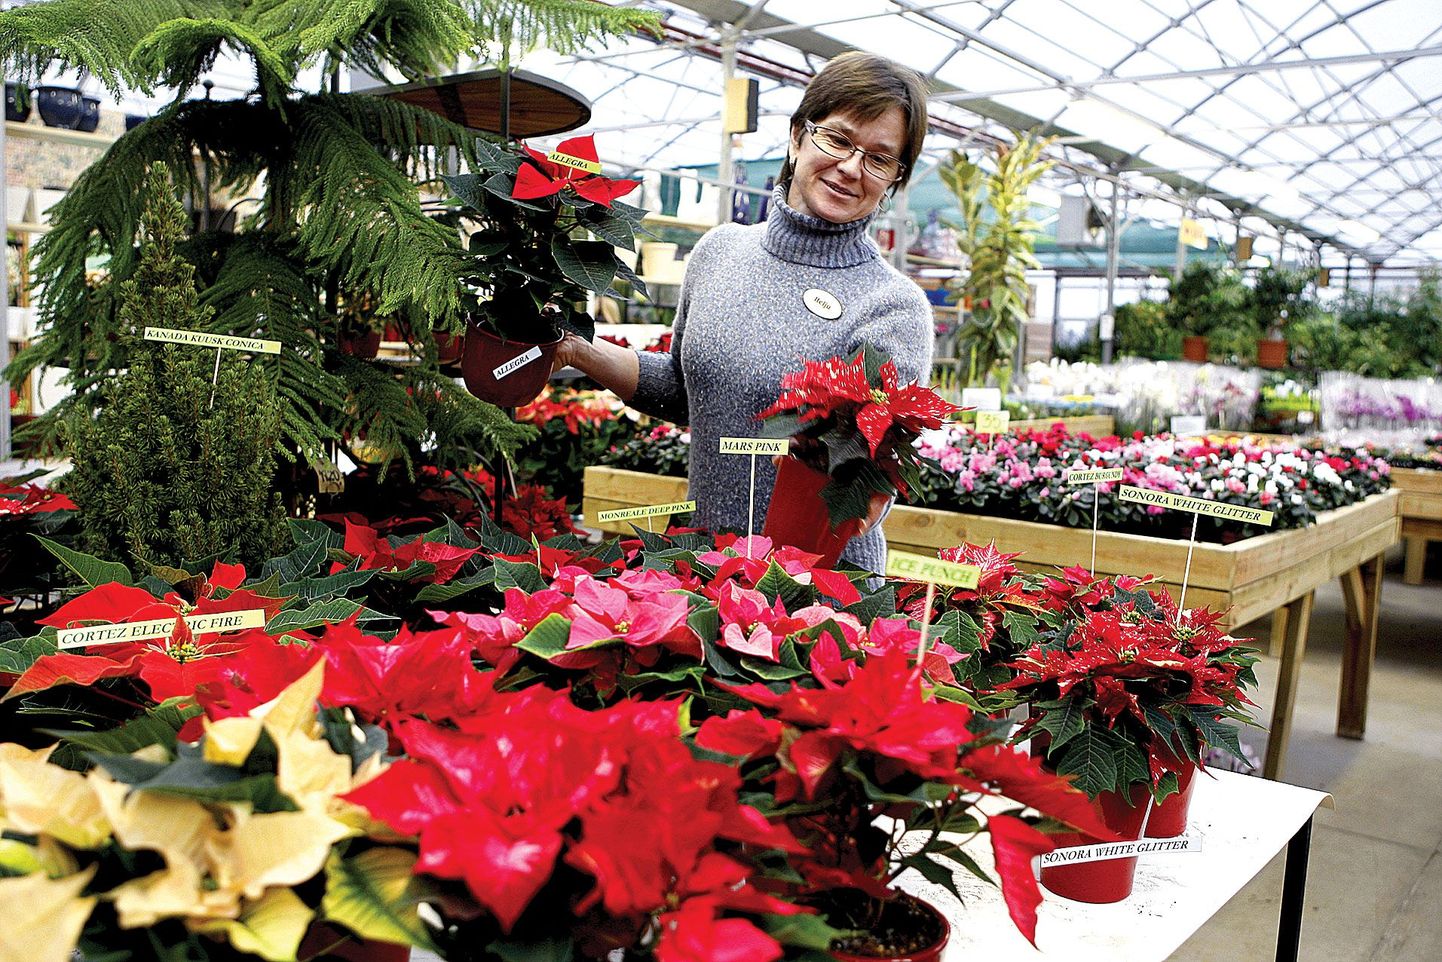 Jardini aianduskeskuse töötaja Helju Purm hoolitseb praegu igat tooni jõulutähtede eest ning kindlasti viib neist mõne peagi ka koju. «Mis jõulud need kuuse ja jõulutäheta oleksid,» naeris ta.